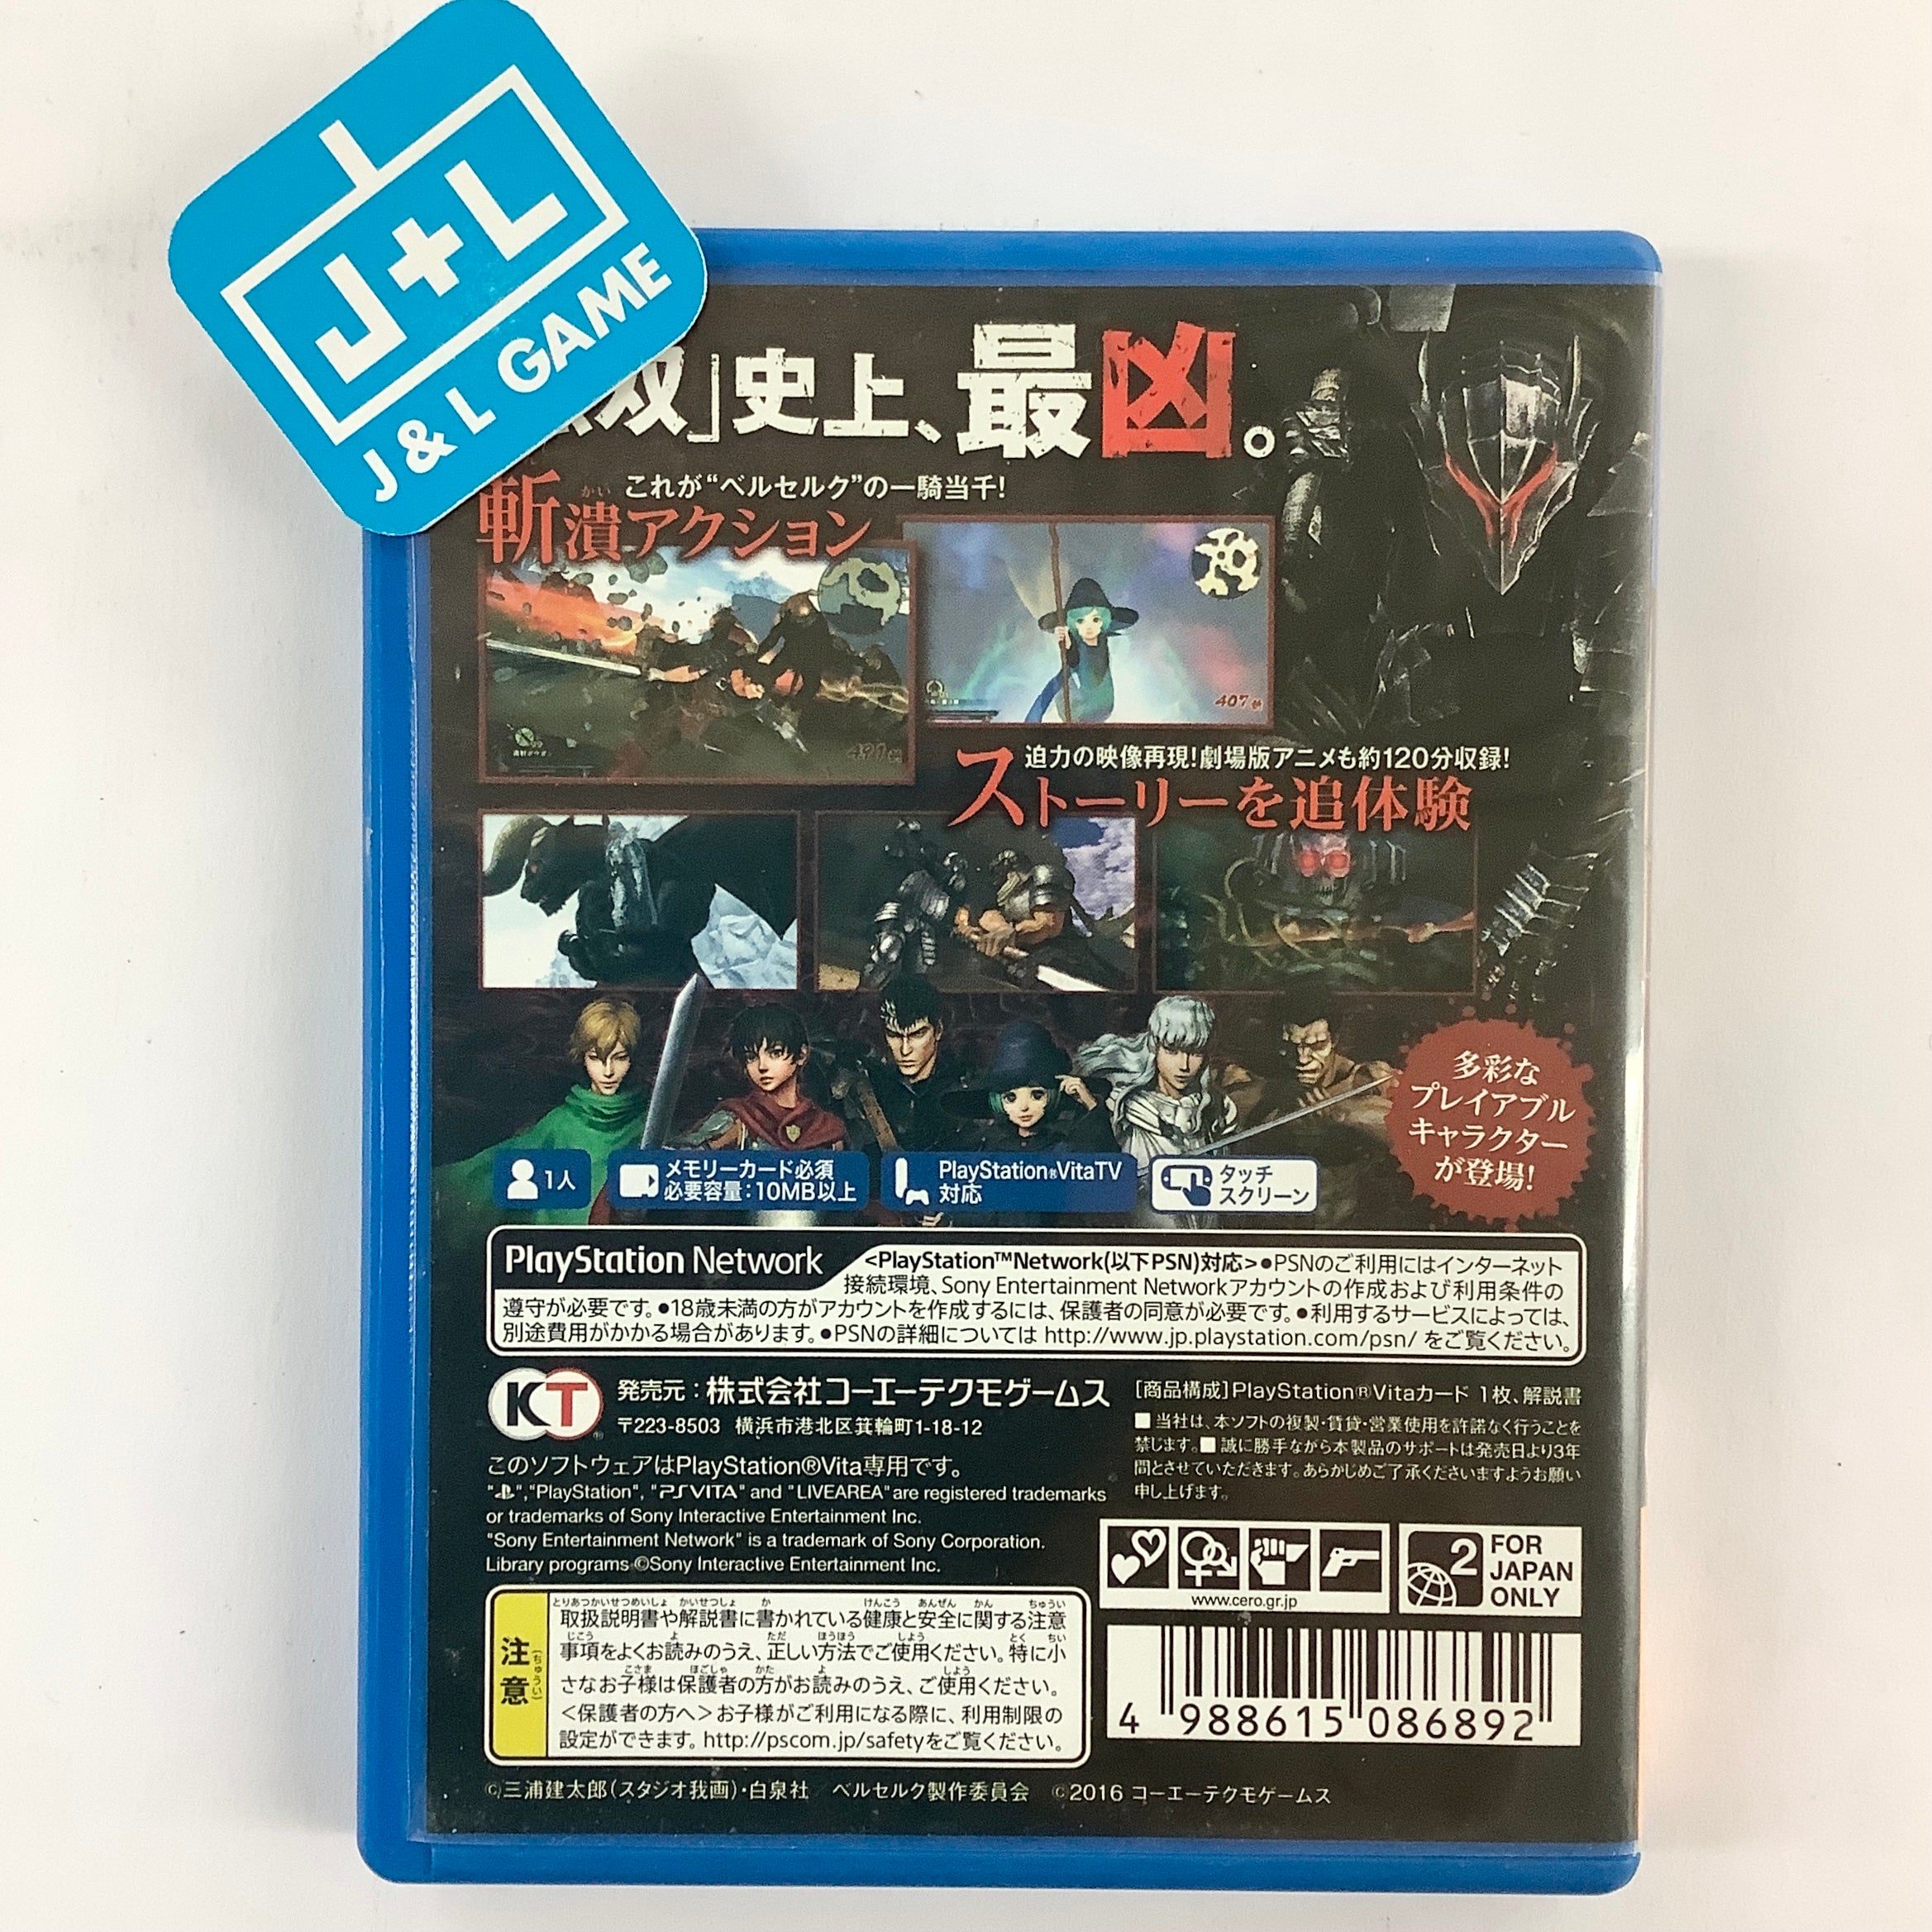 Berserk Musou - (PSV) PlayStation Vita [Pre-Owned] (Japanese Import) Video Games Koei Tecmo Games   